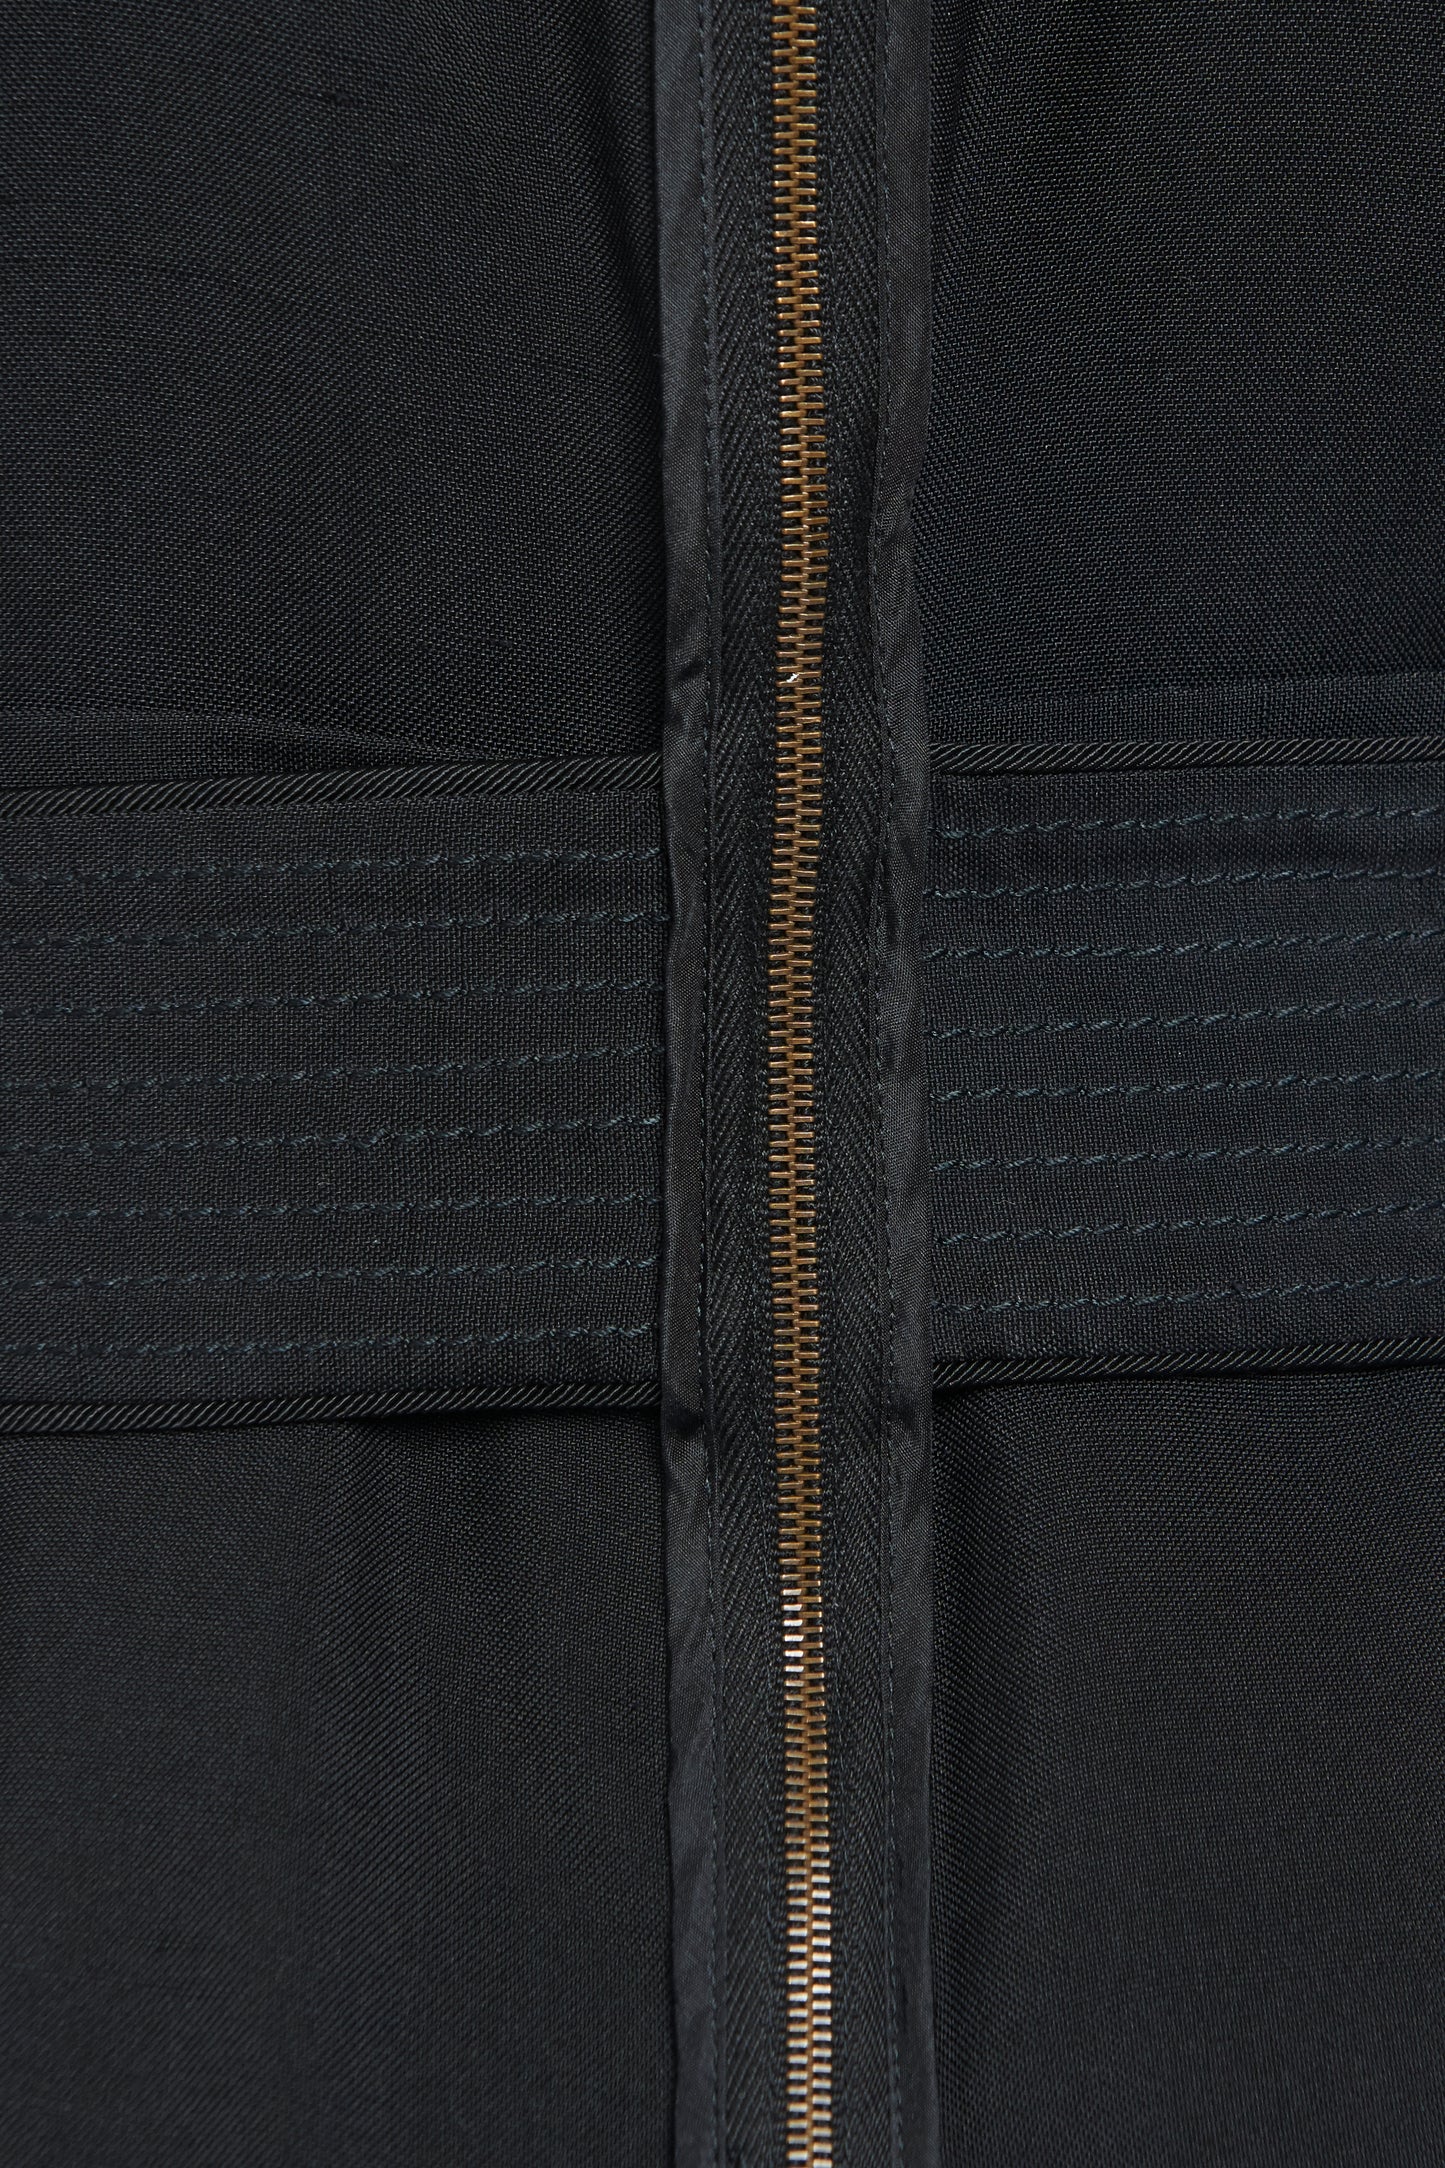 Black Silk Belted Jumpsuit